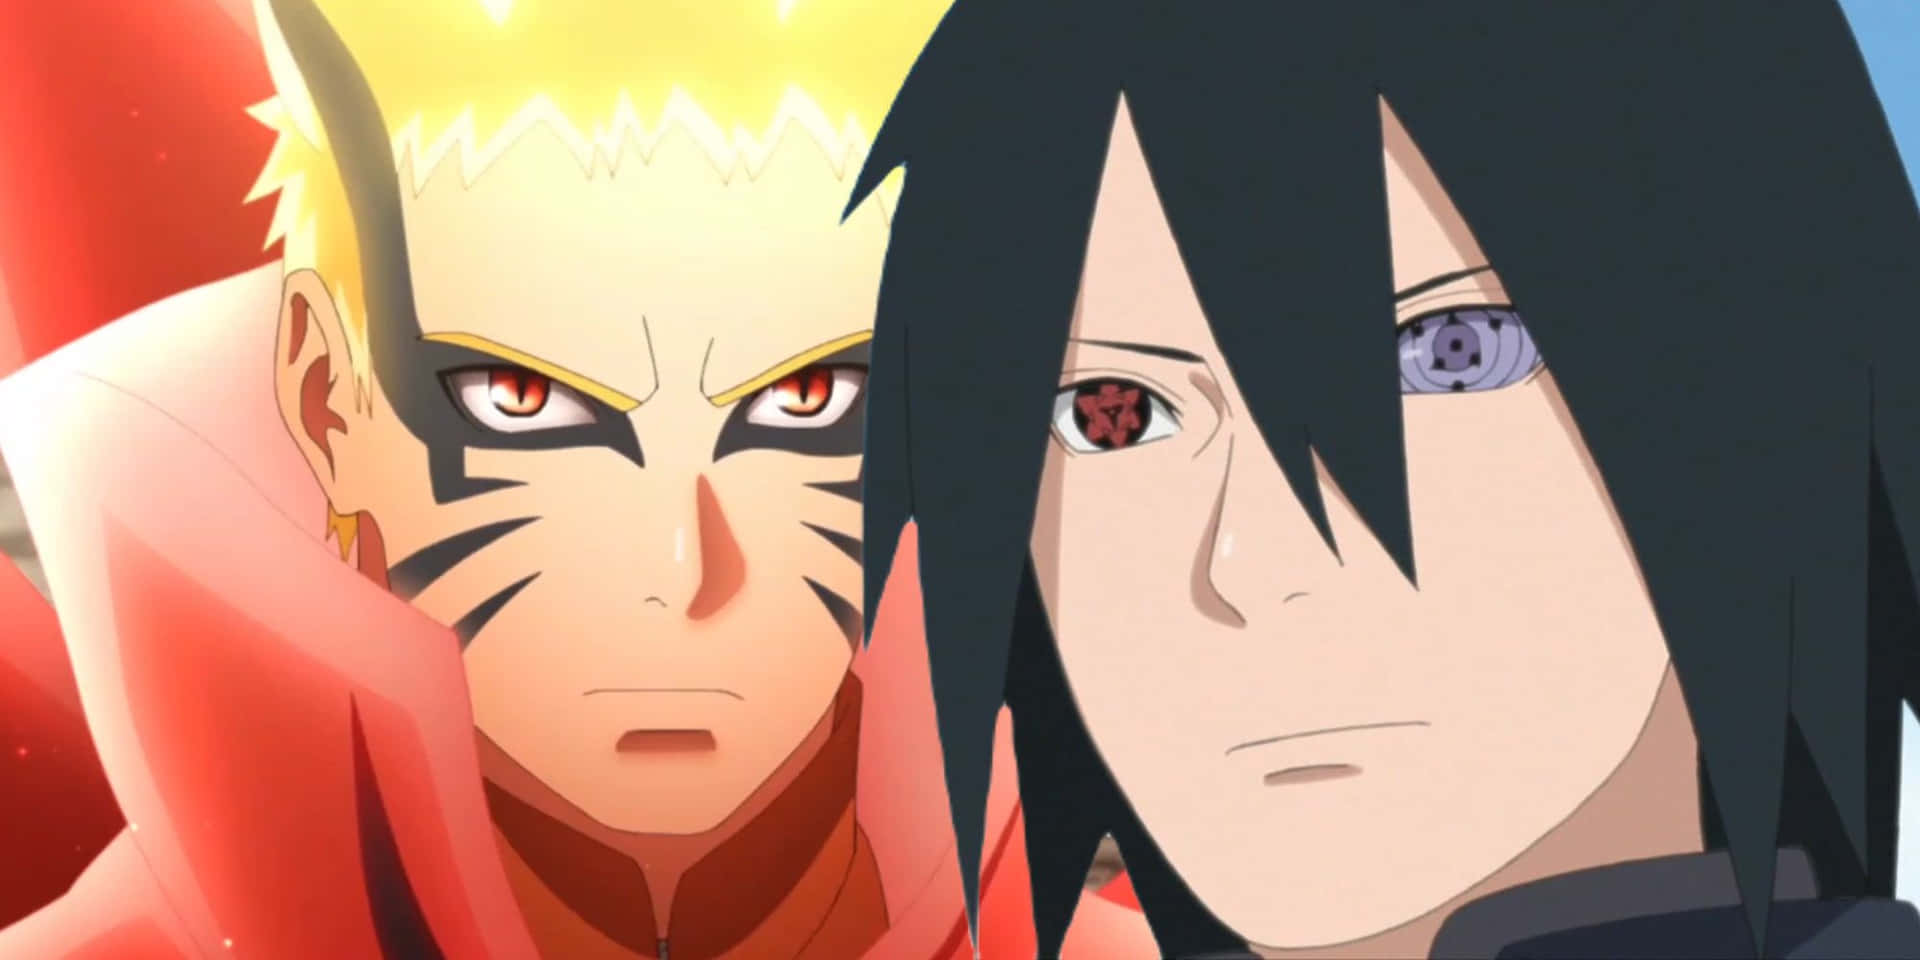 Dosrivales Finalmente Se Encuentran, Sasuke (izquierda) Y Naruto (derecha)